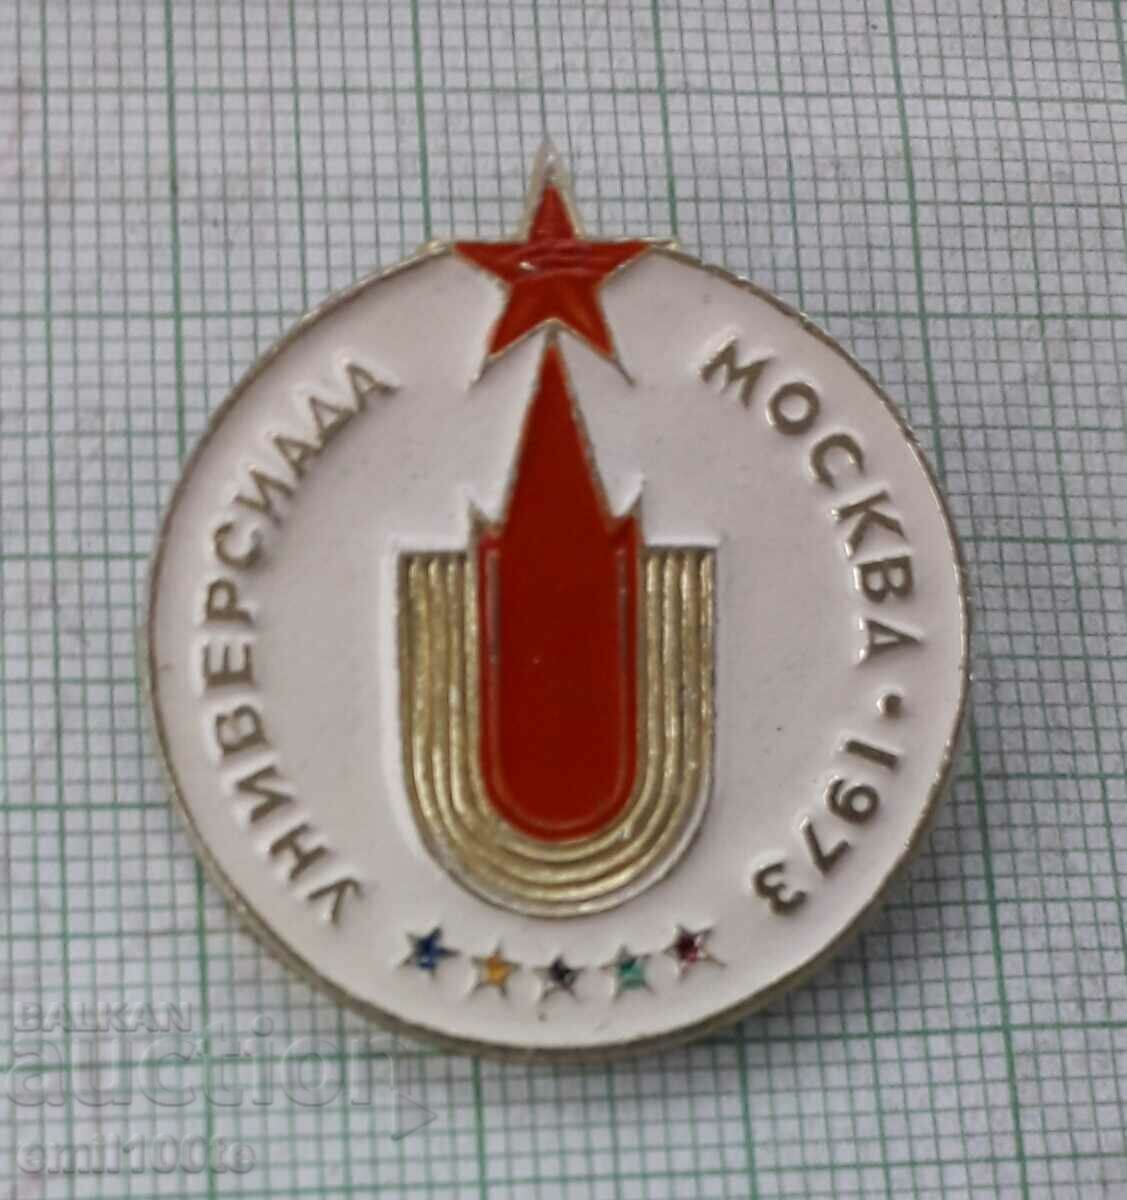 Σήμα - Πανεπιστημιακή Μόσχα 1973